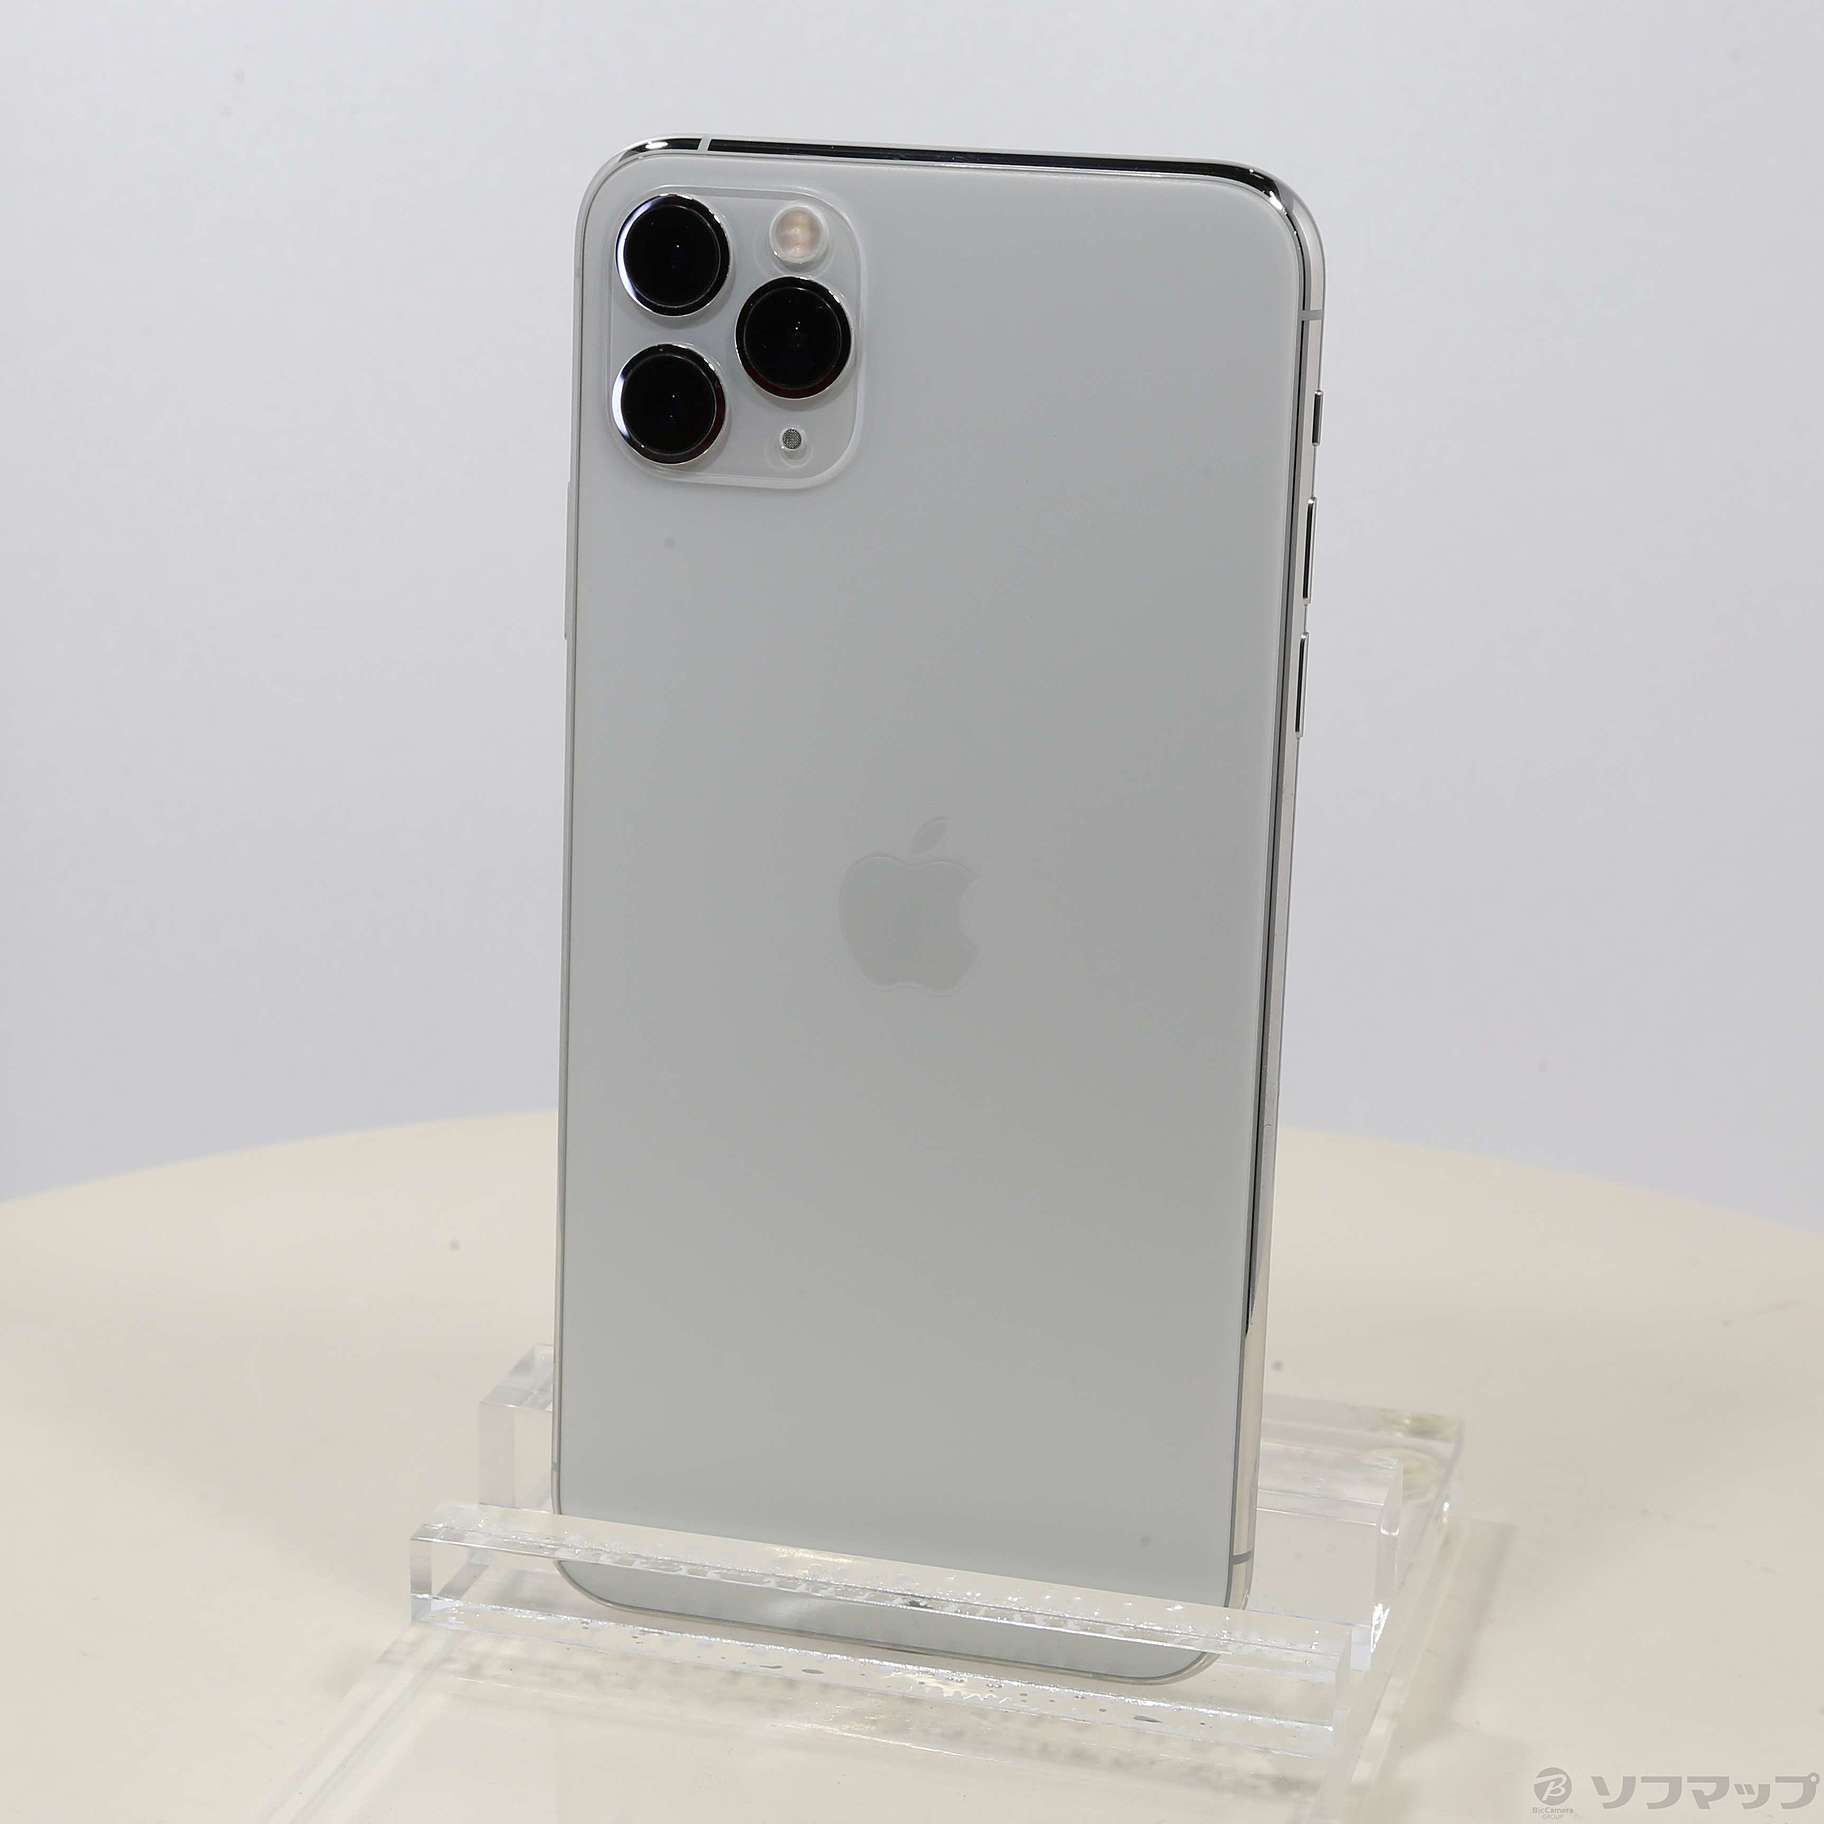 セール対象品 iPhone11 Pro Max 256GB シルバー MWHK2J／A SIMフリー